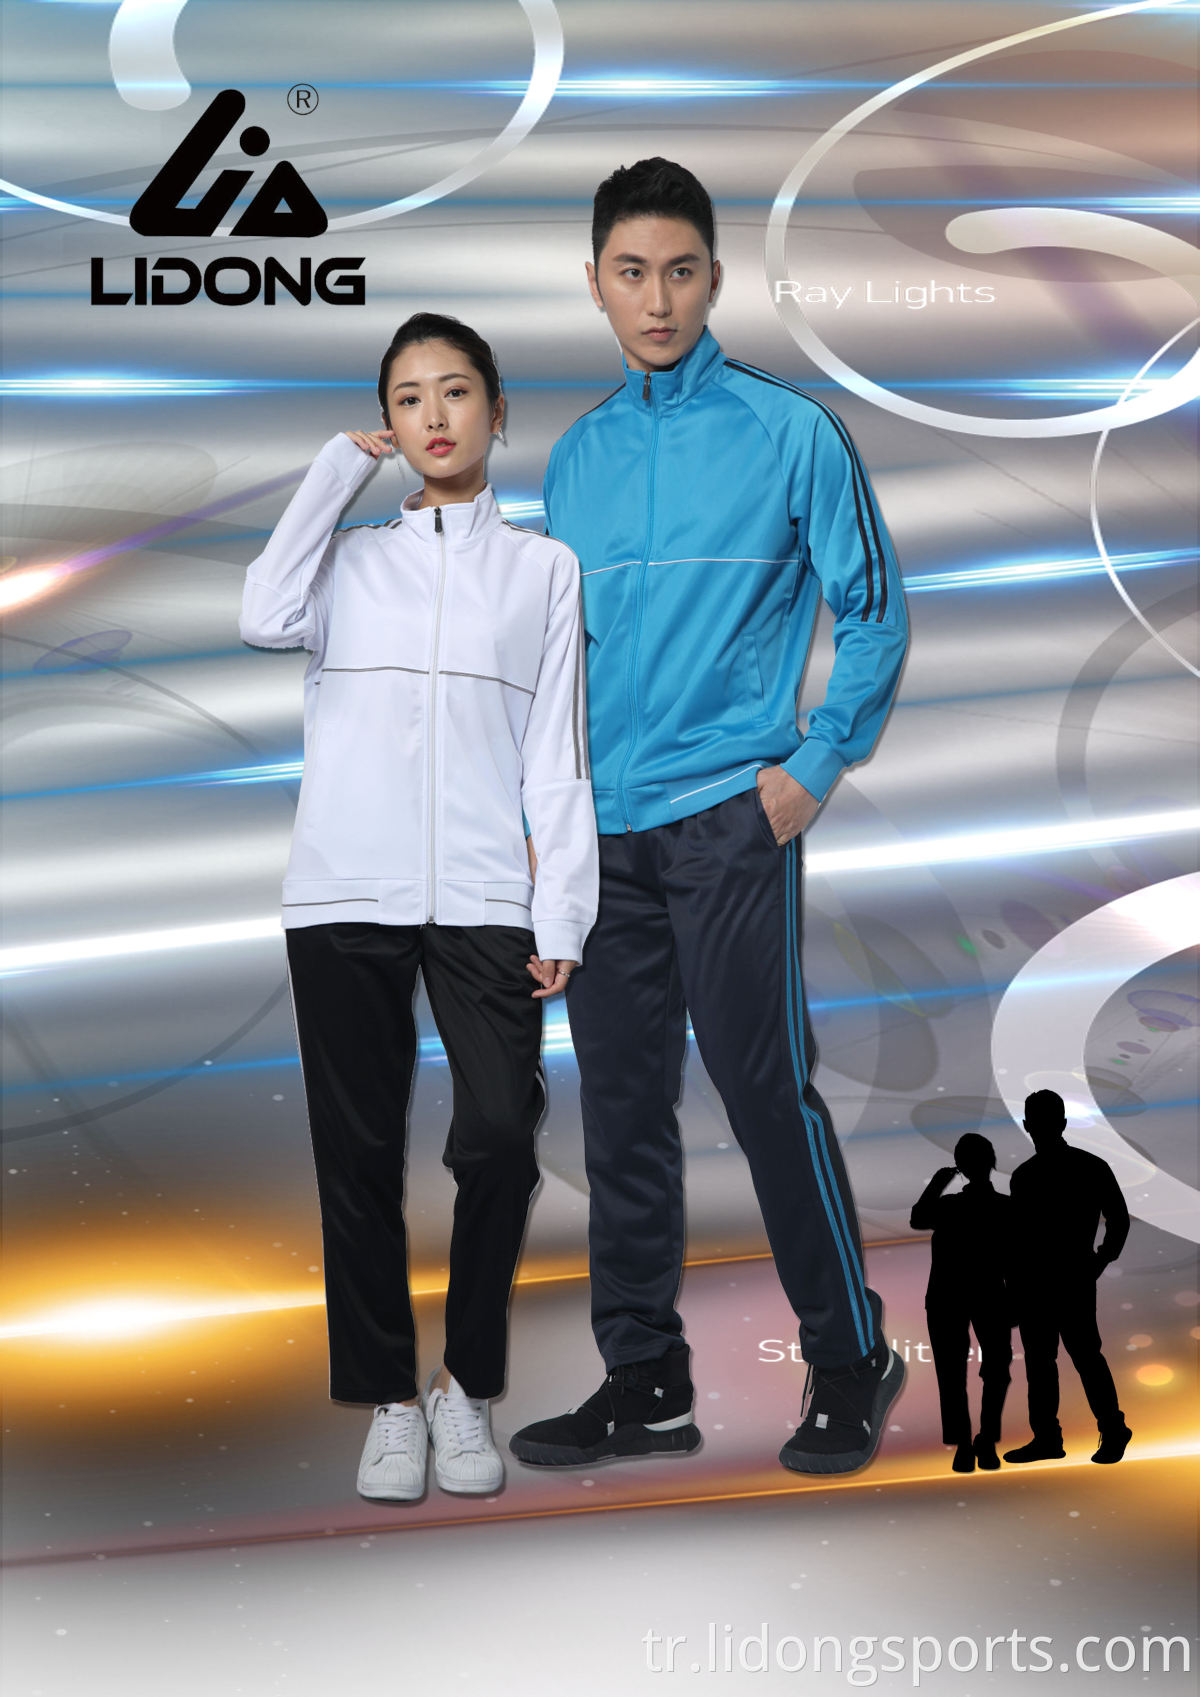 Lidong toptan profesyonel ısınma takım elbise süblimasyon özel eşofman tasarımı